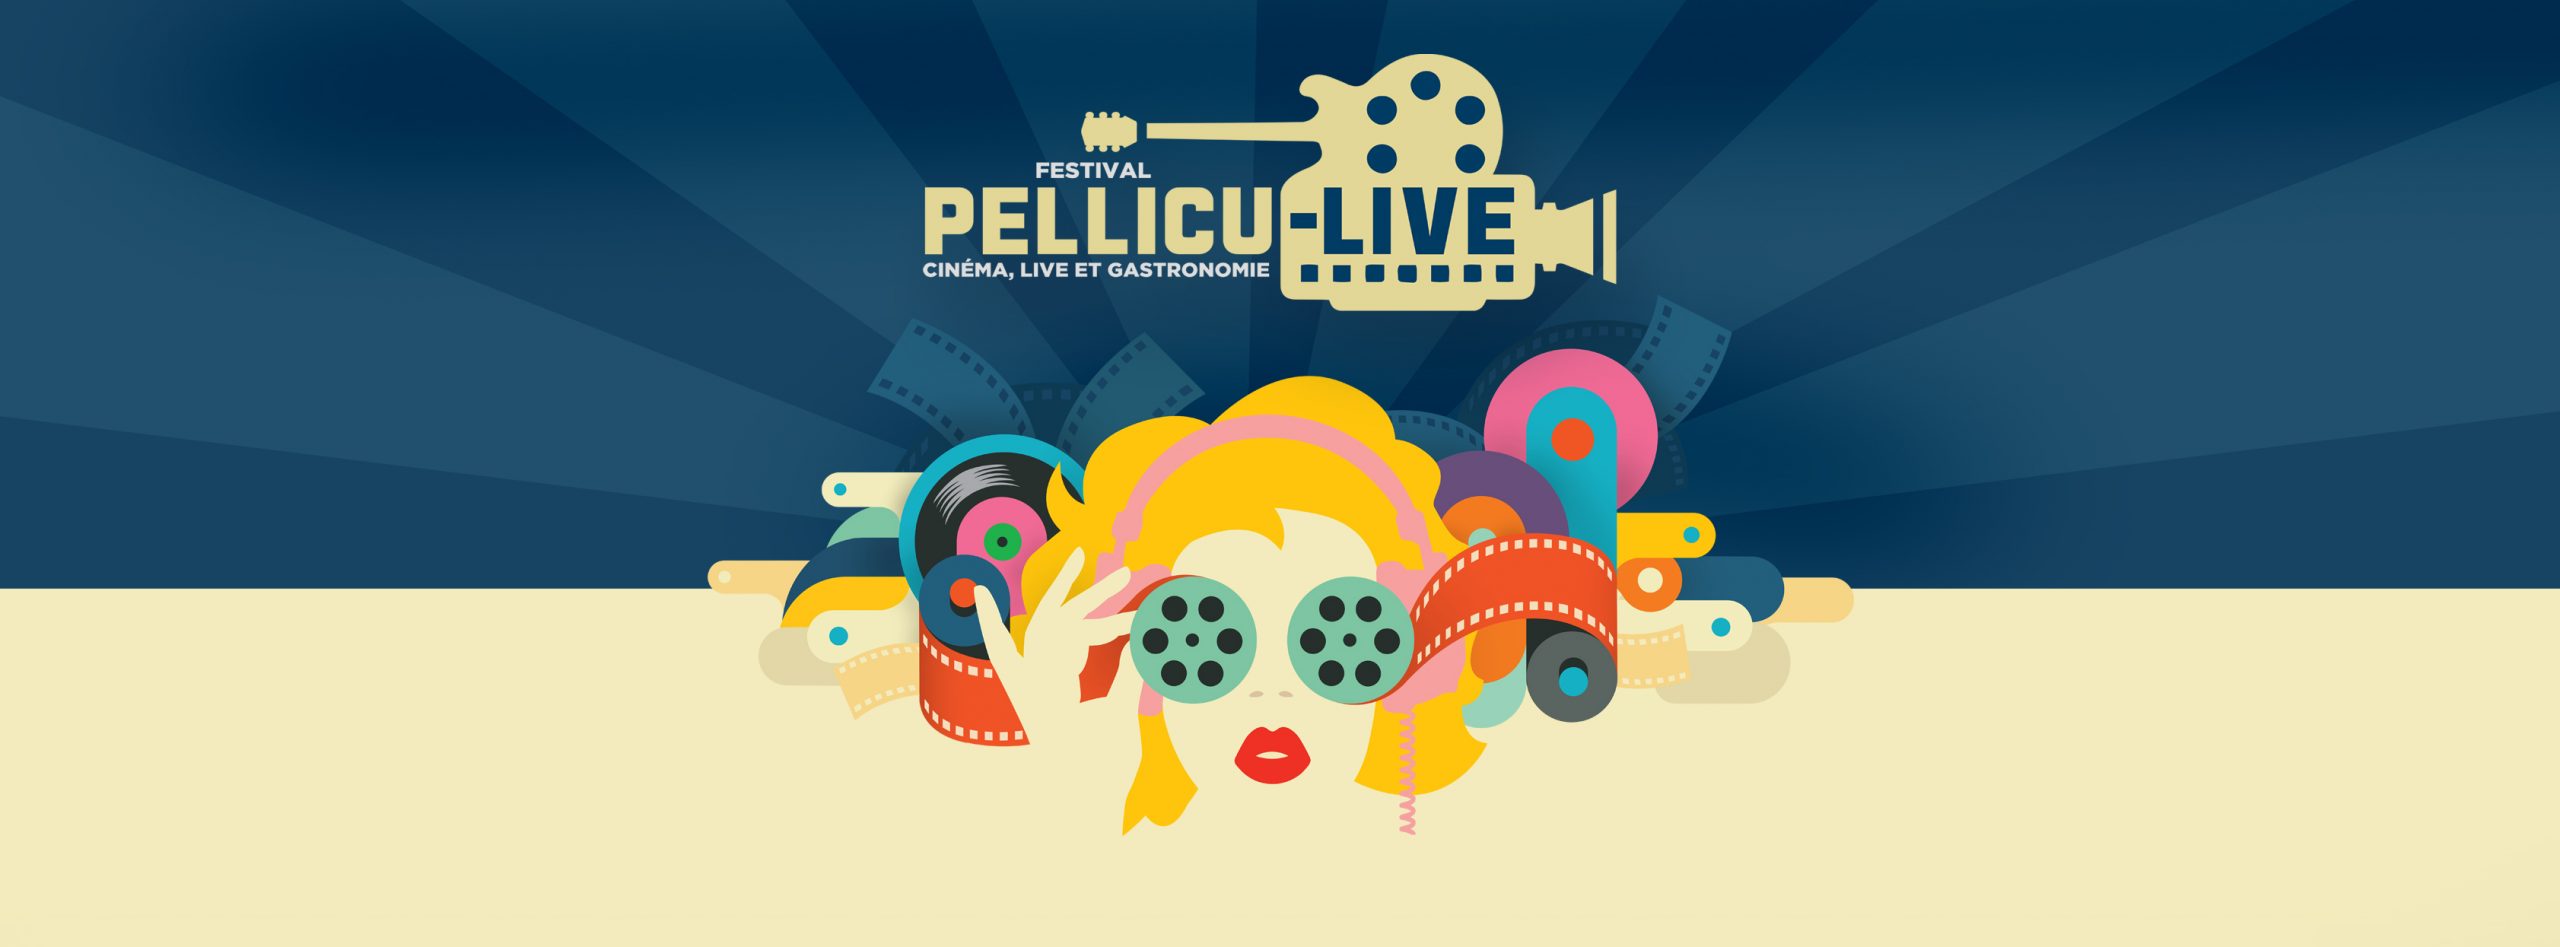 Pellicu-live